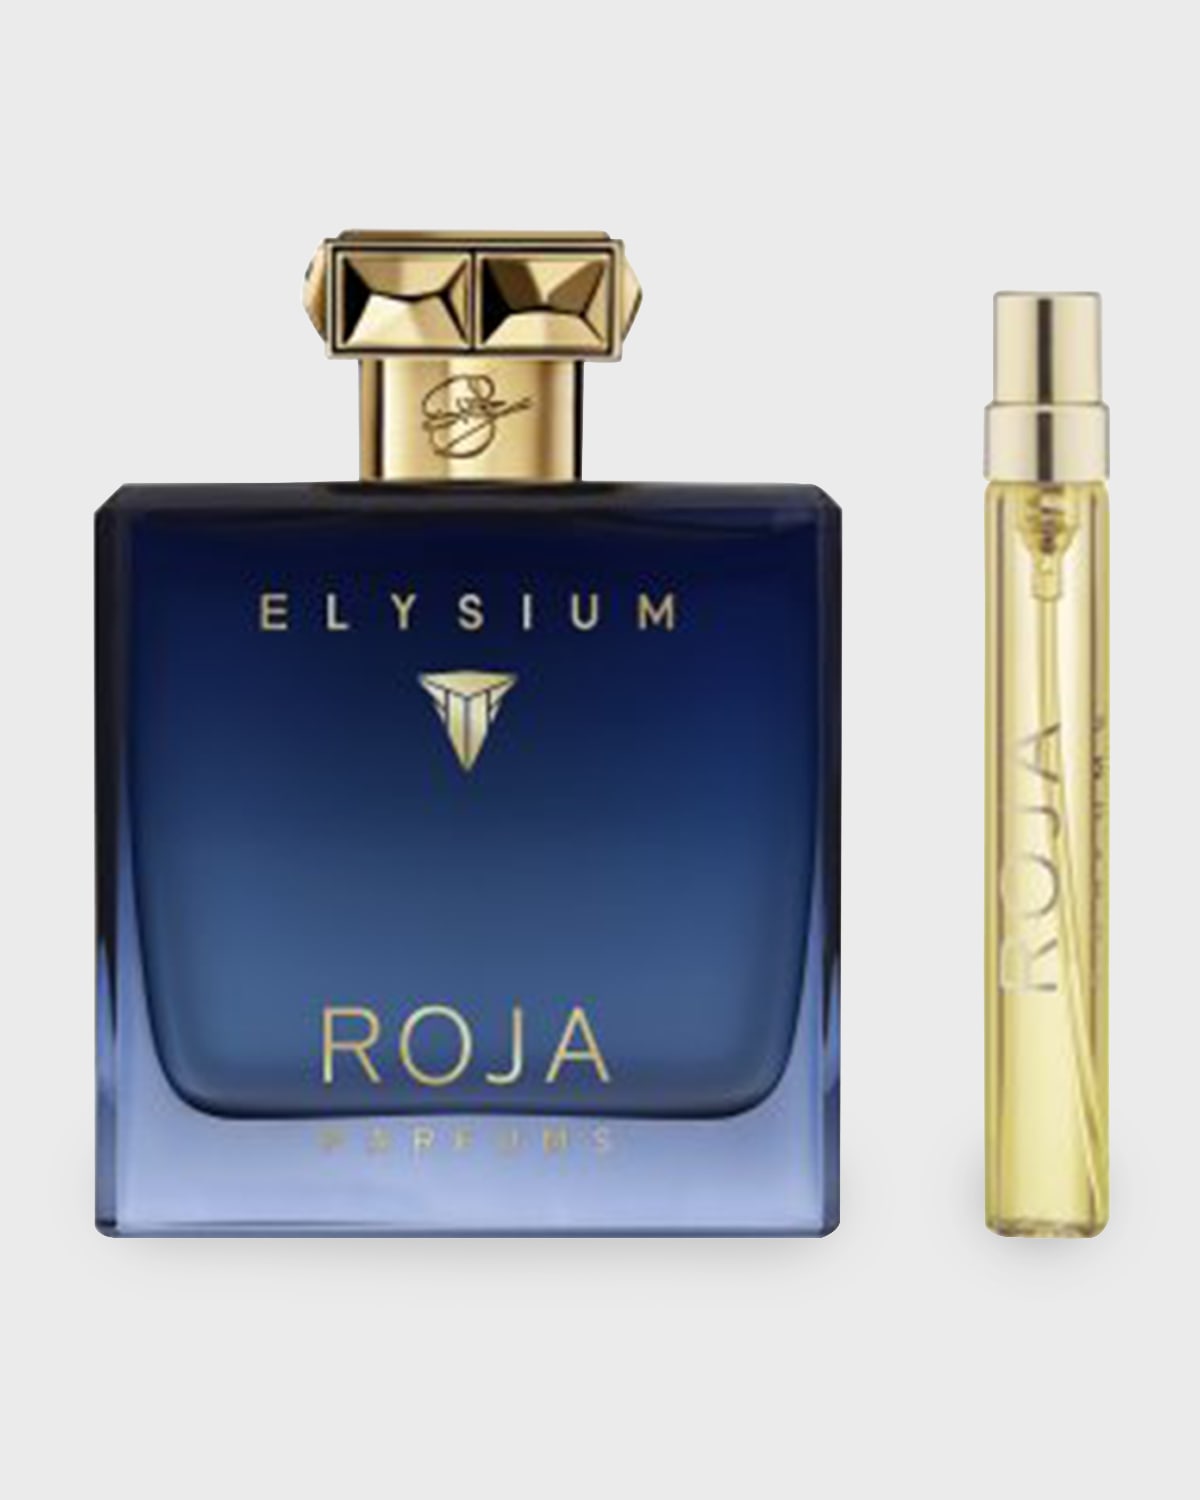 Limited Edition Elysium Pour Homme Parfume Cologne Gift Set ($400 Value)